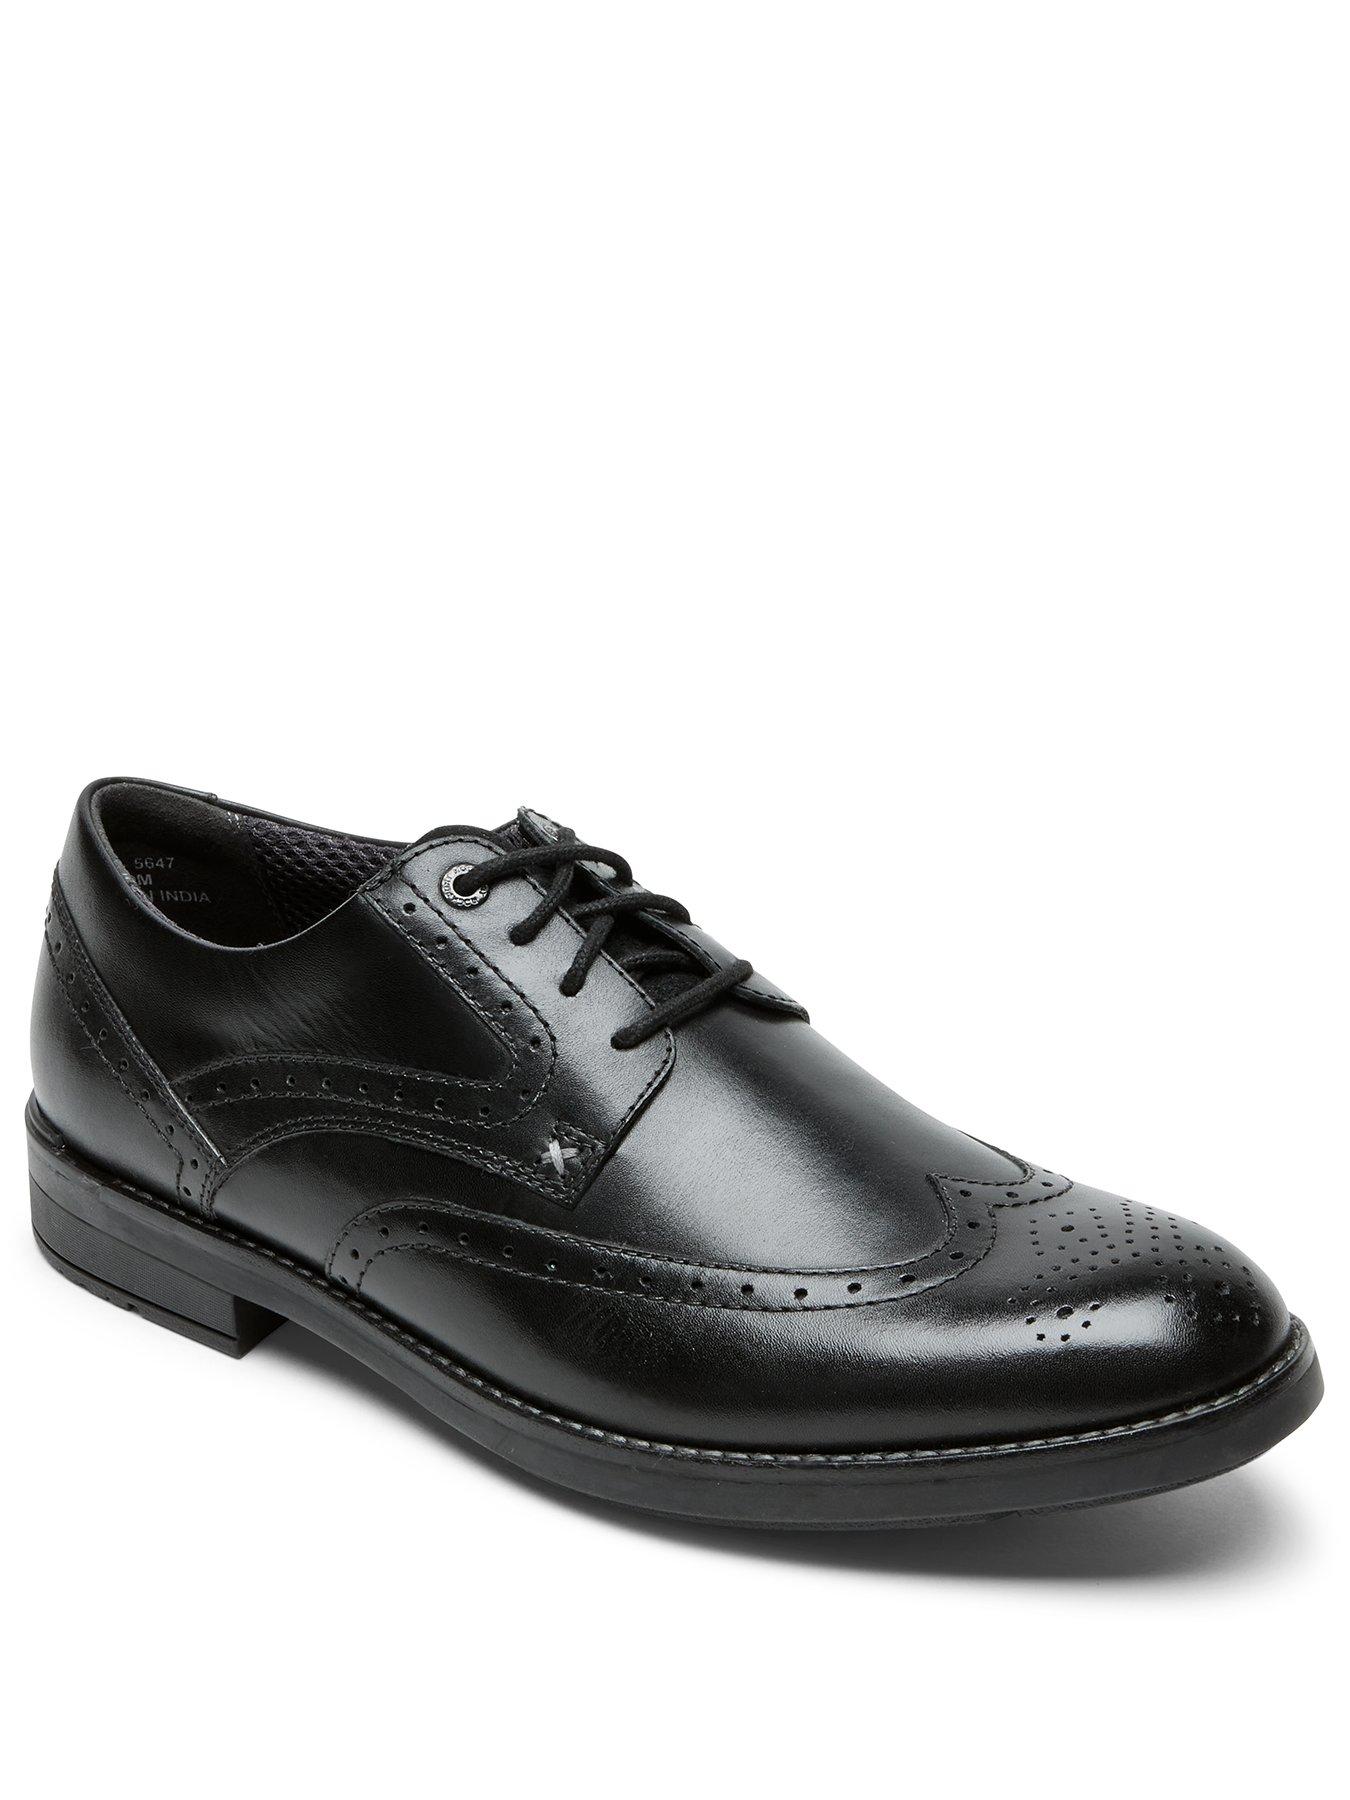  Rockport Sanborn Wingtip Shoes - Black